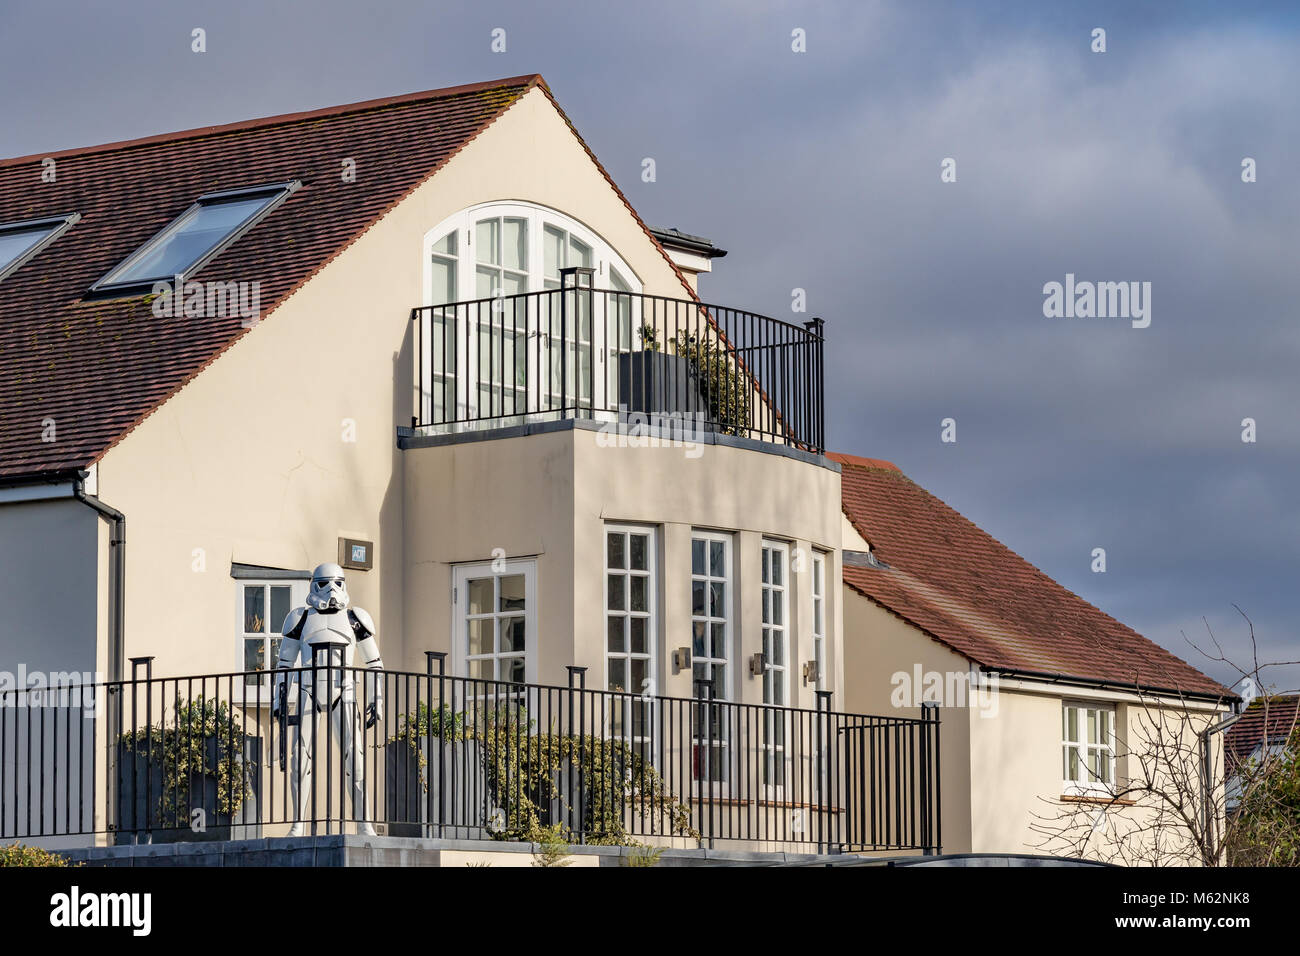 Une maison dans une banlieue de Londres avec un lifesize Star Wars stormtrooper sur le balcon Banque D'Images